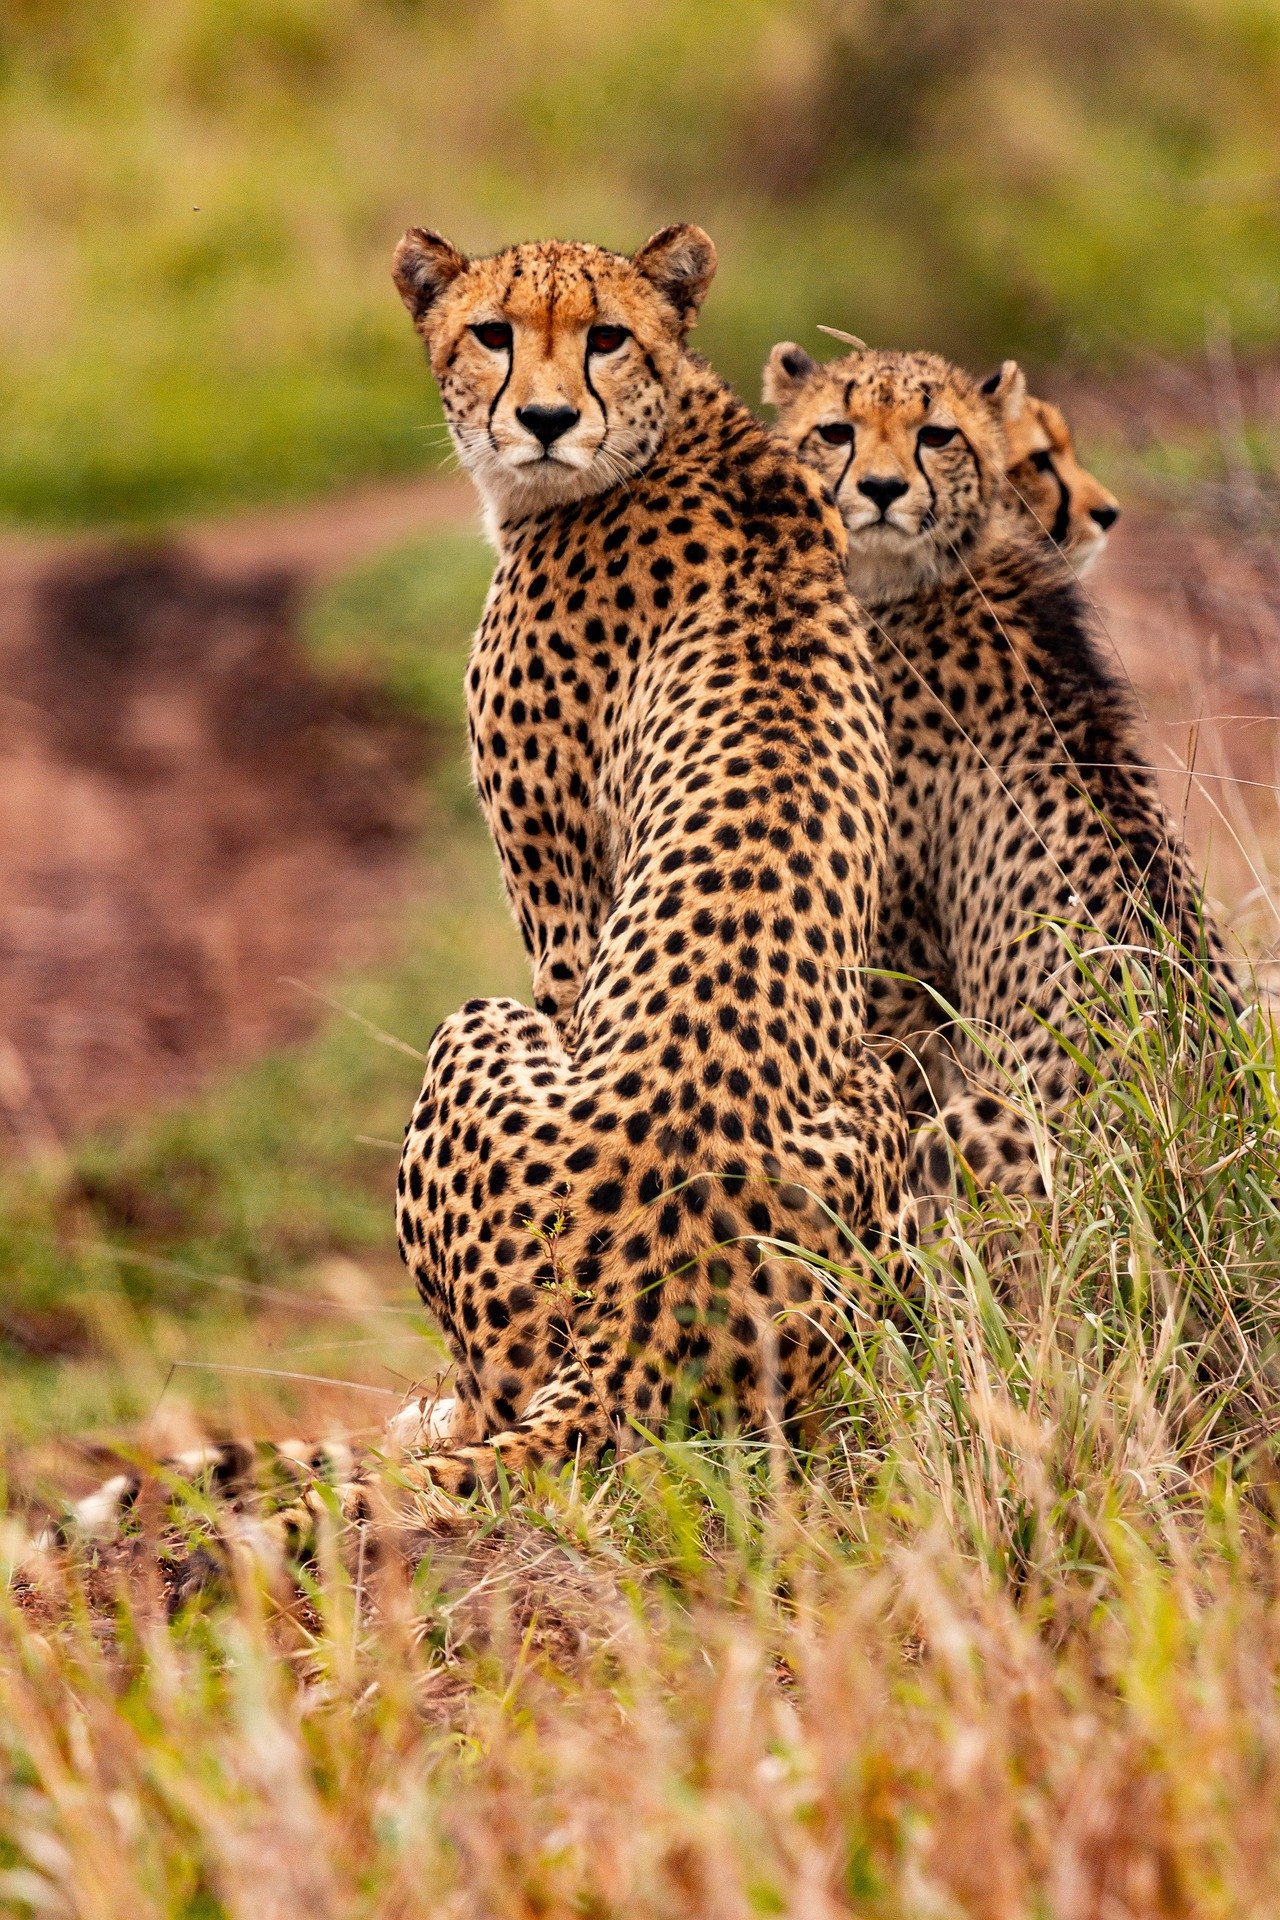 Kenia Tanzania cheeta's